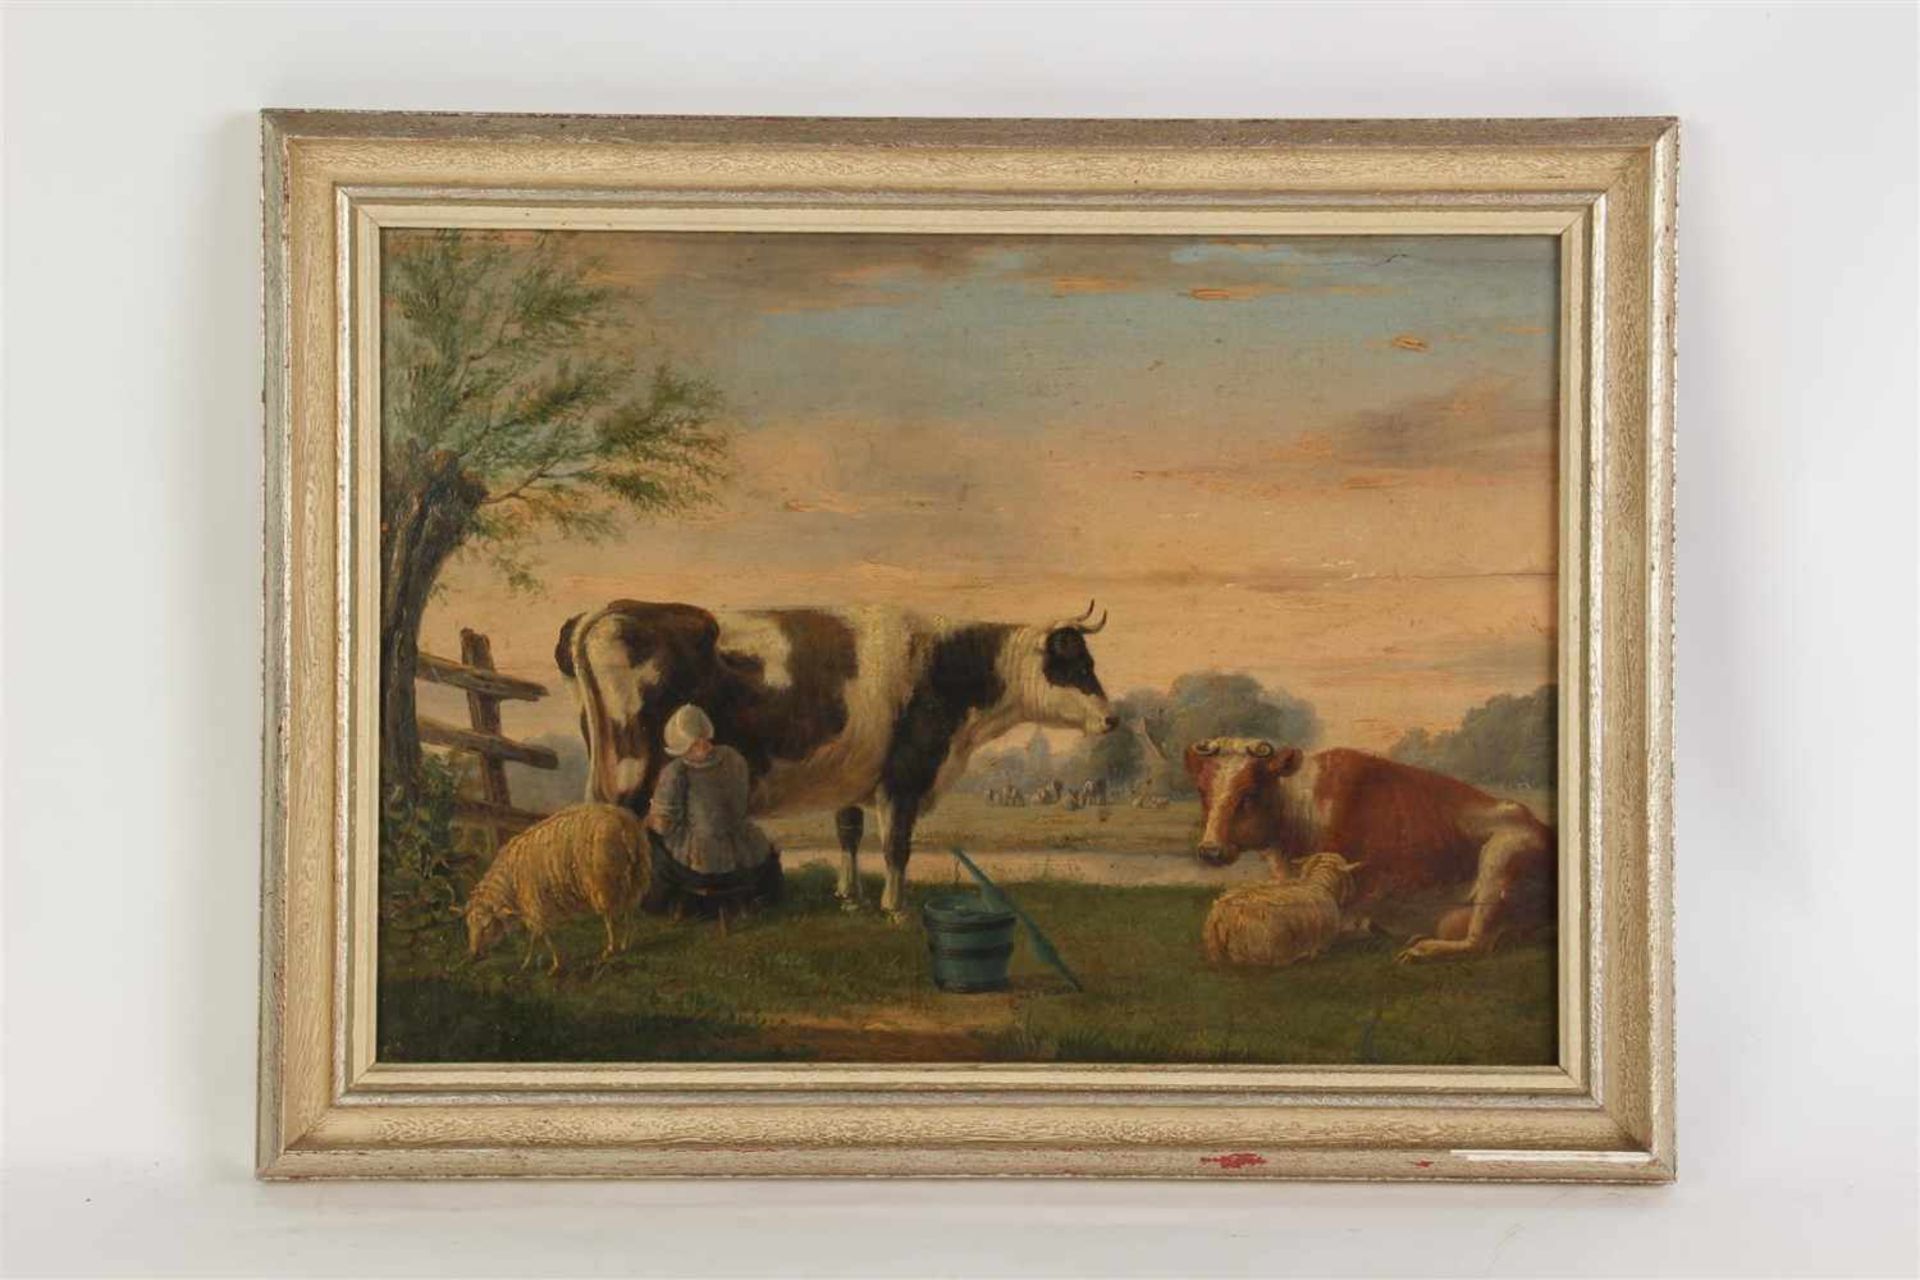 Schilderij olieverf op paneel 'Landschap met vee', gesigneerd C. van der Bijl, gedateerd 1861.